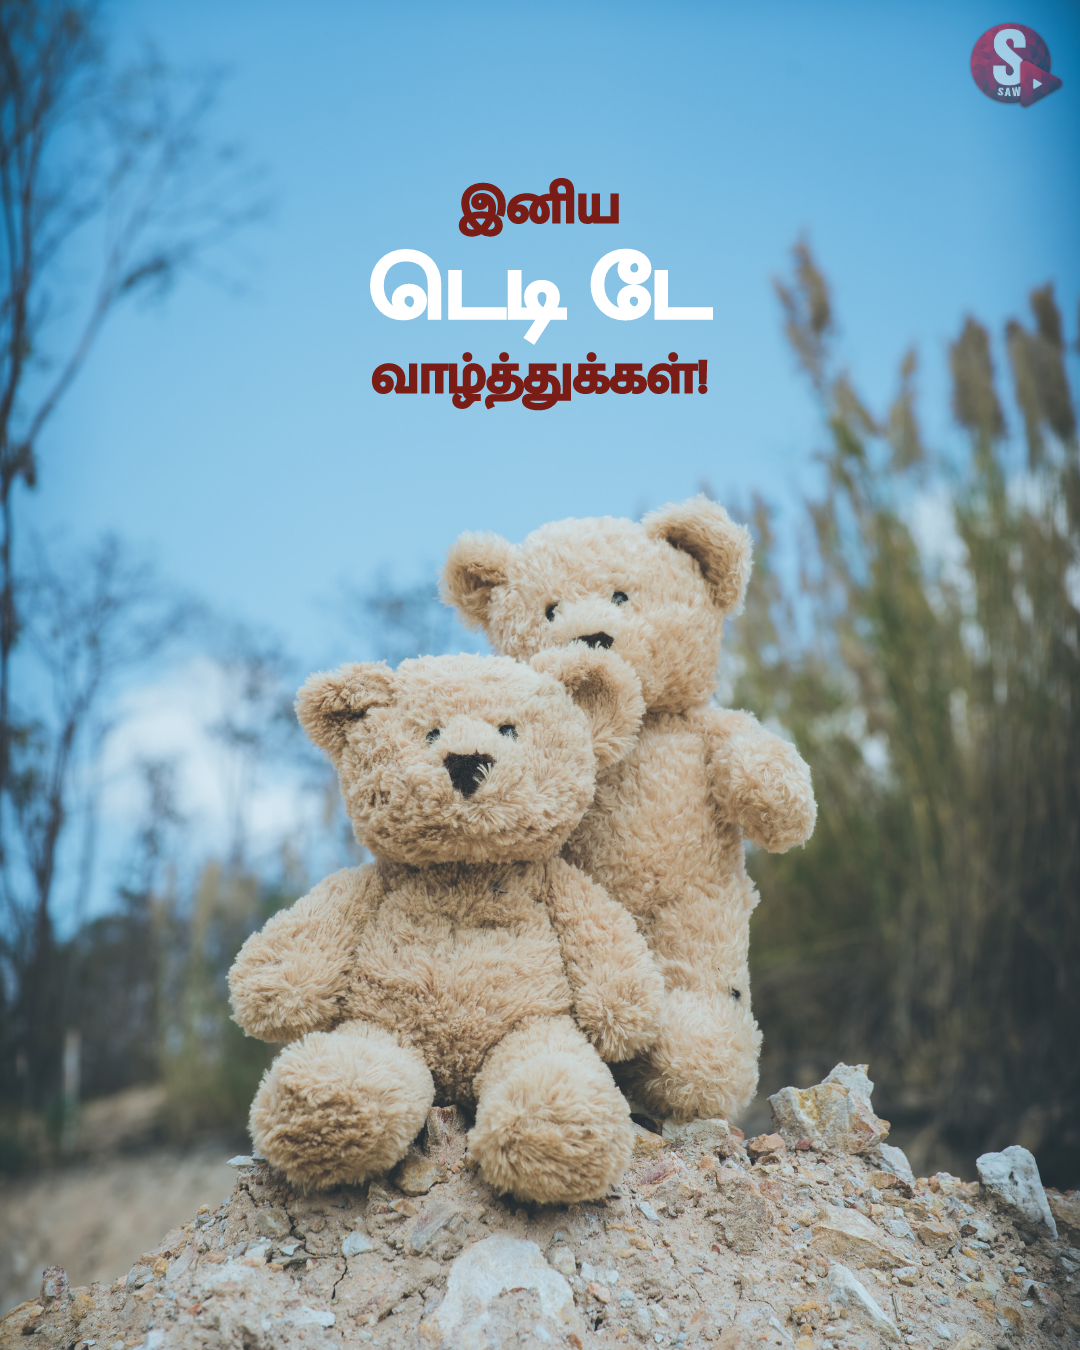 டெடி டே வாழ்த்துக்கள்! | Teddy Day 2023 Wishes in Tamil